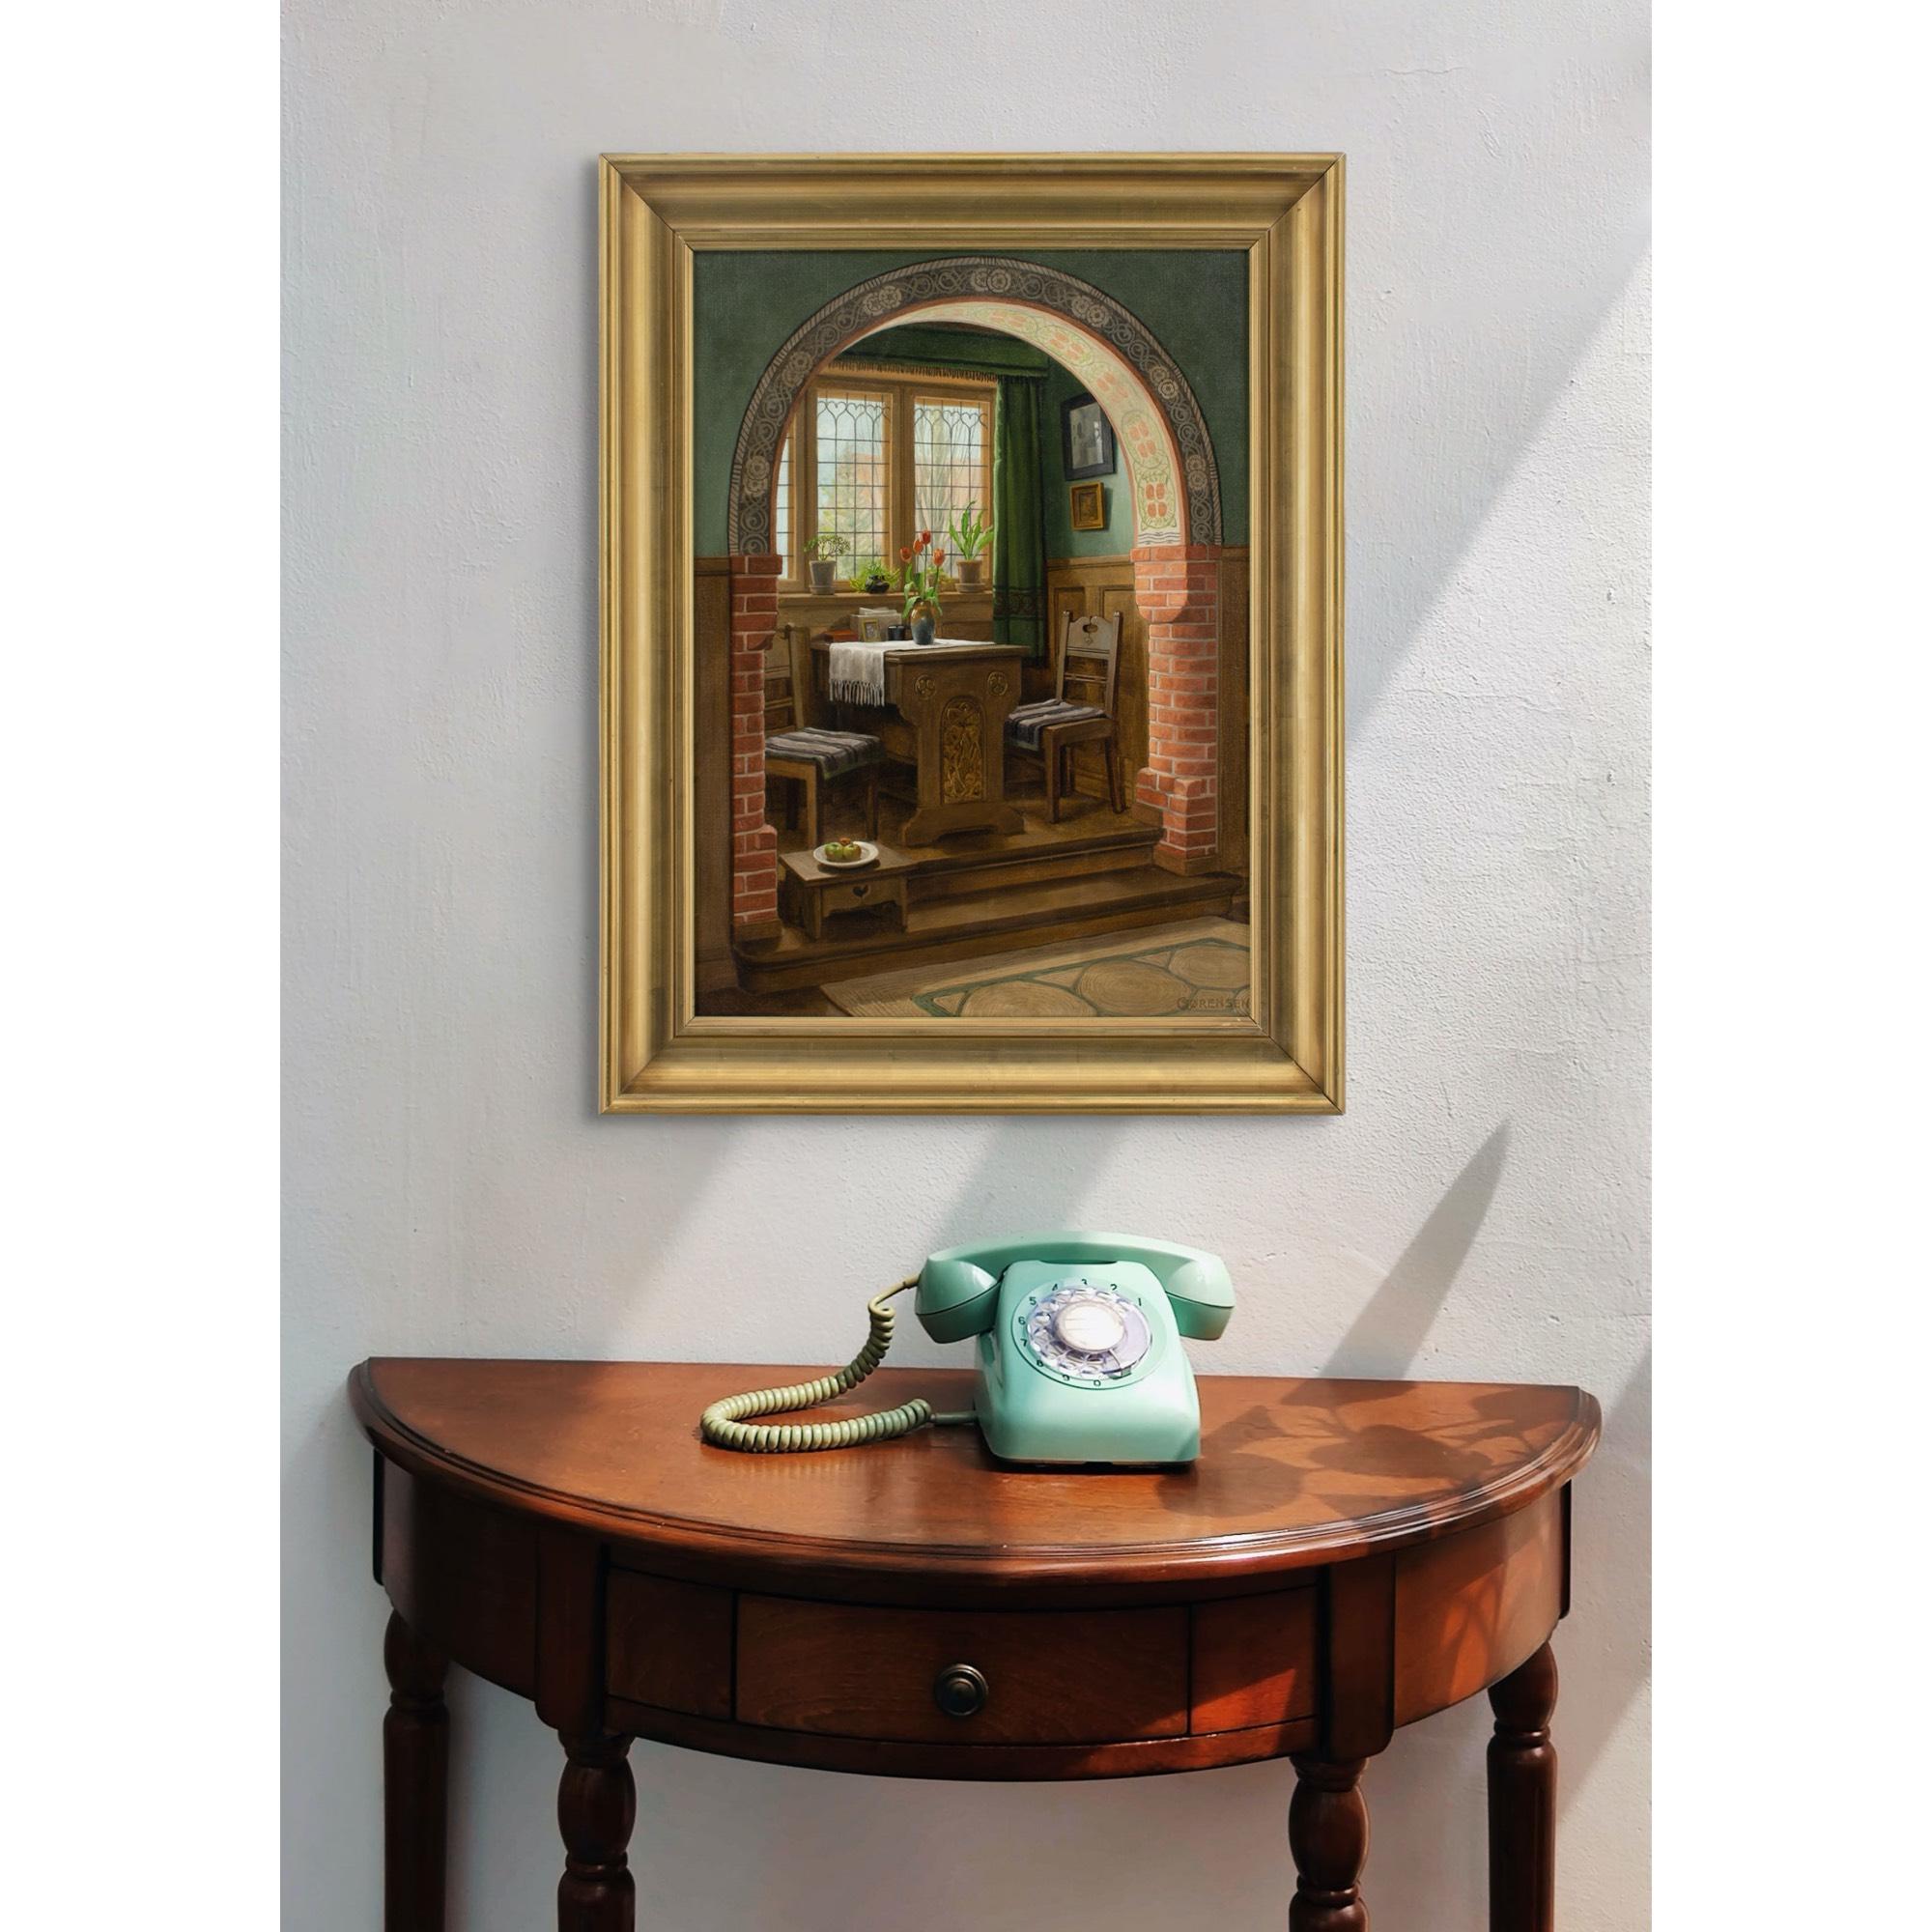 Dieses charmante Ölgemälde des dänischen Künstlers C. Sorensen aus dem frühen 20. Jahrhundert zeigt ein Interieur mit einem Bogen, einer Essecke und einem Fenster.

Über C. Sørensen ist wenig bekannt, was angesichts seiner offensichtlichen